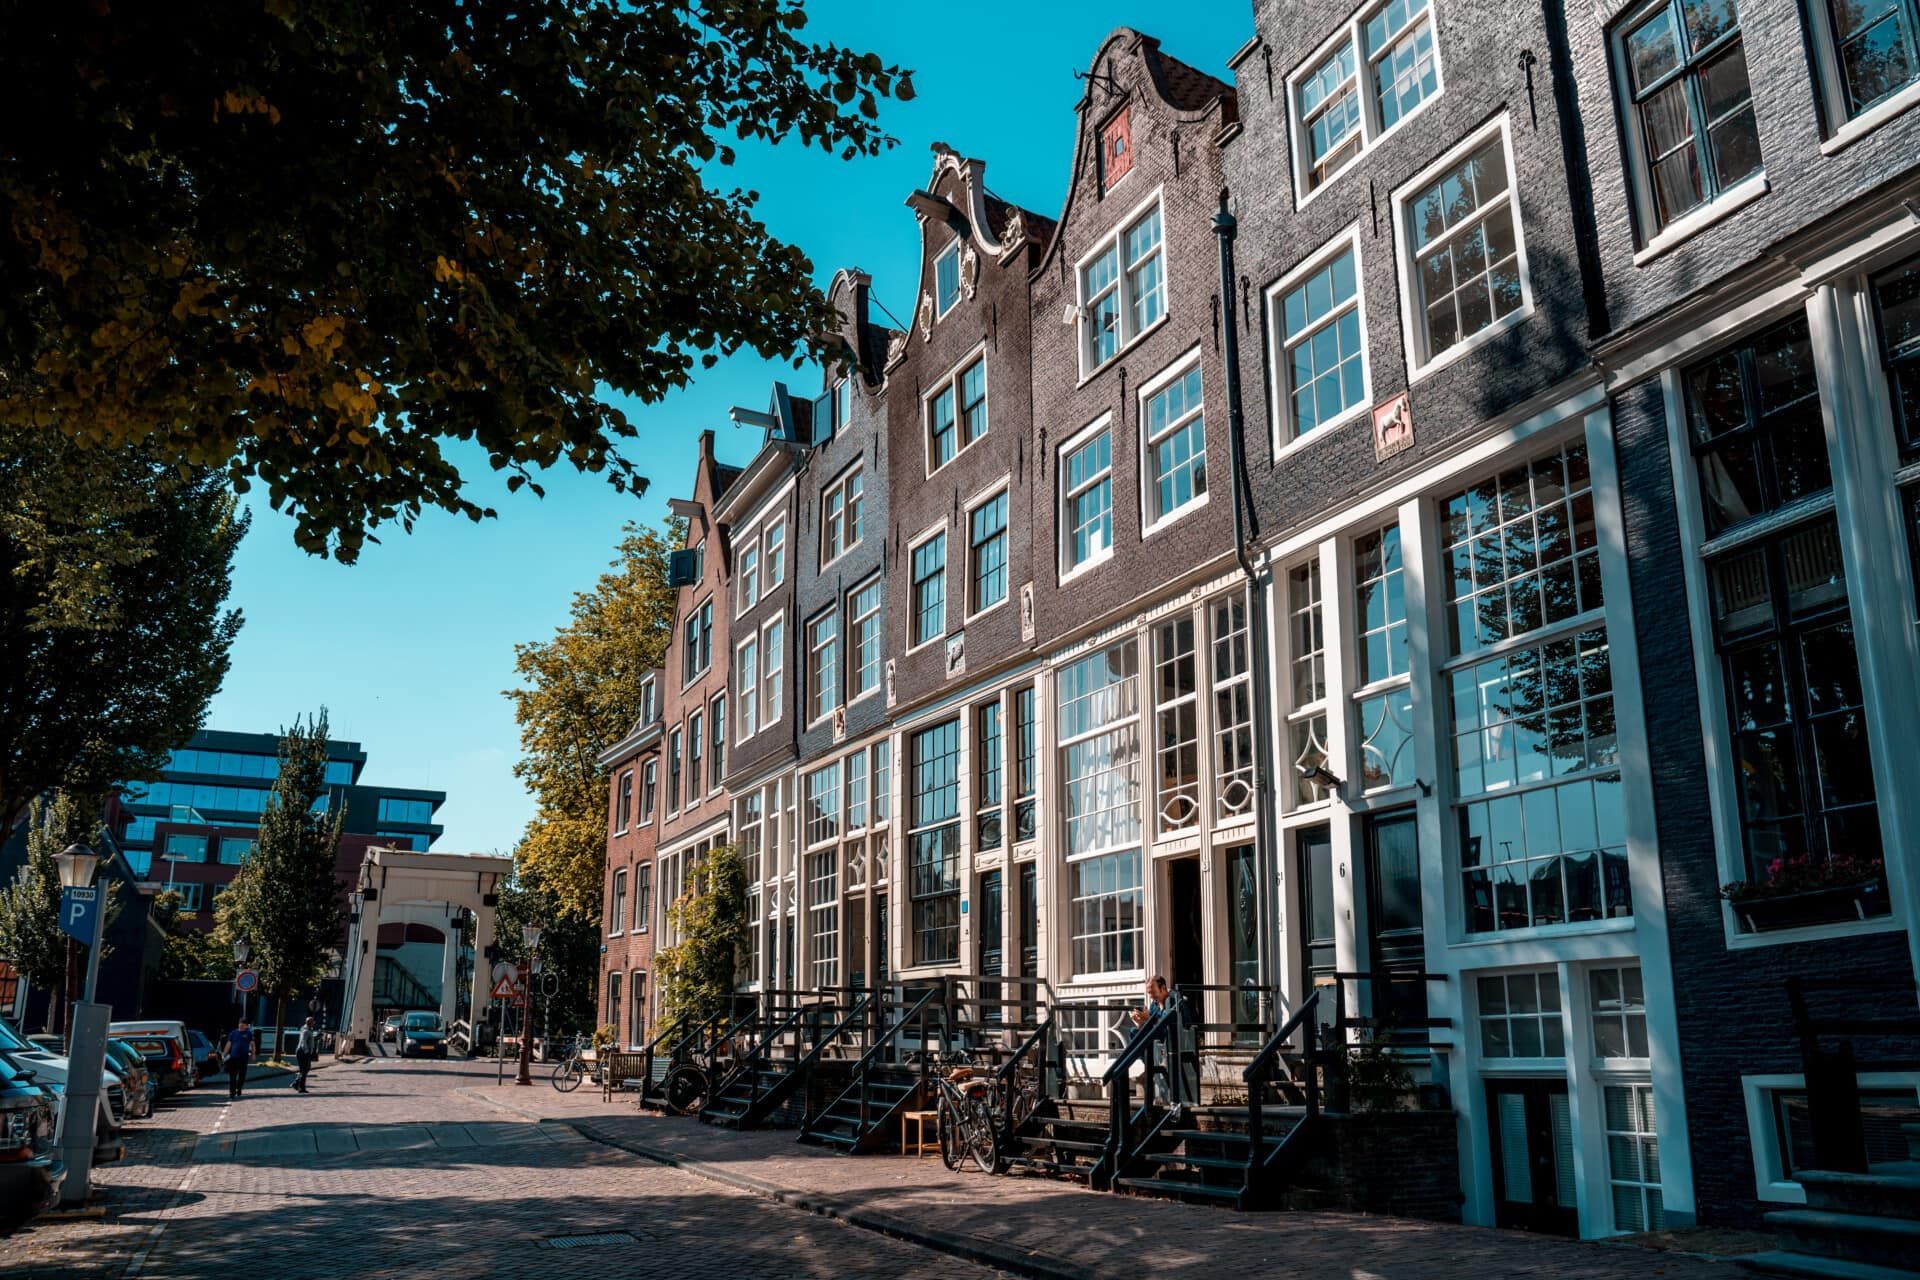 Amsterdam centre